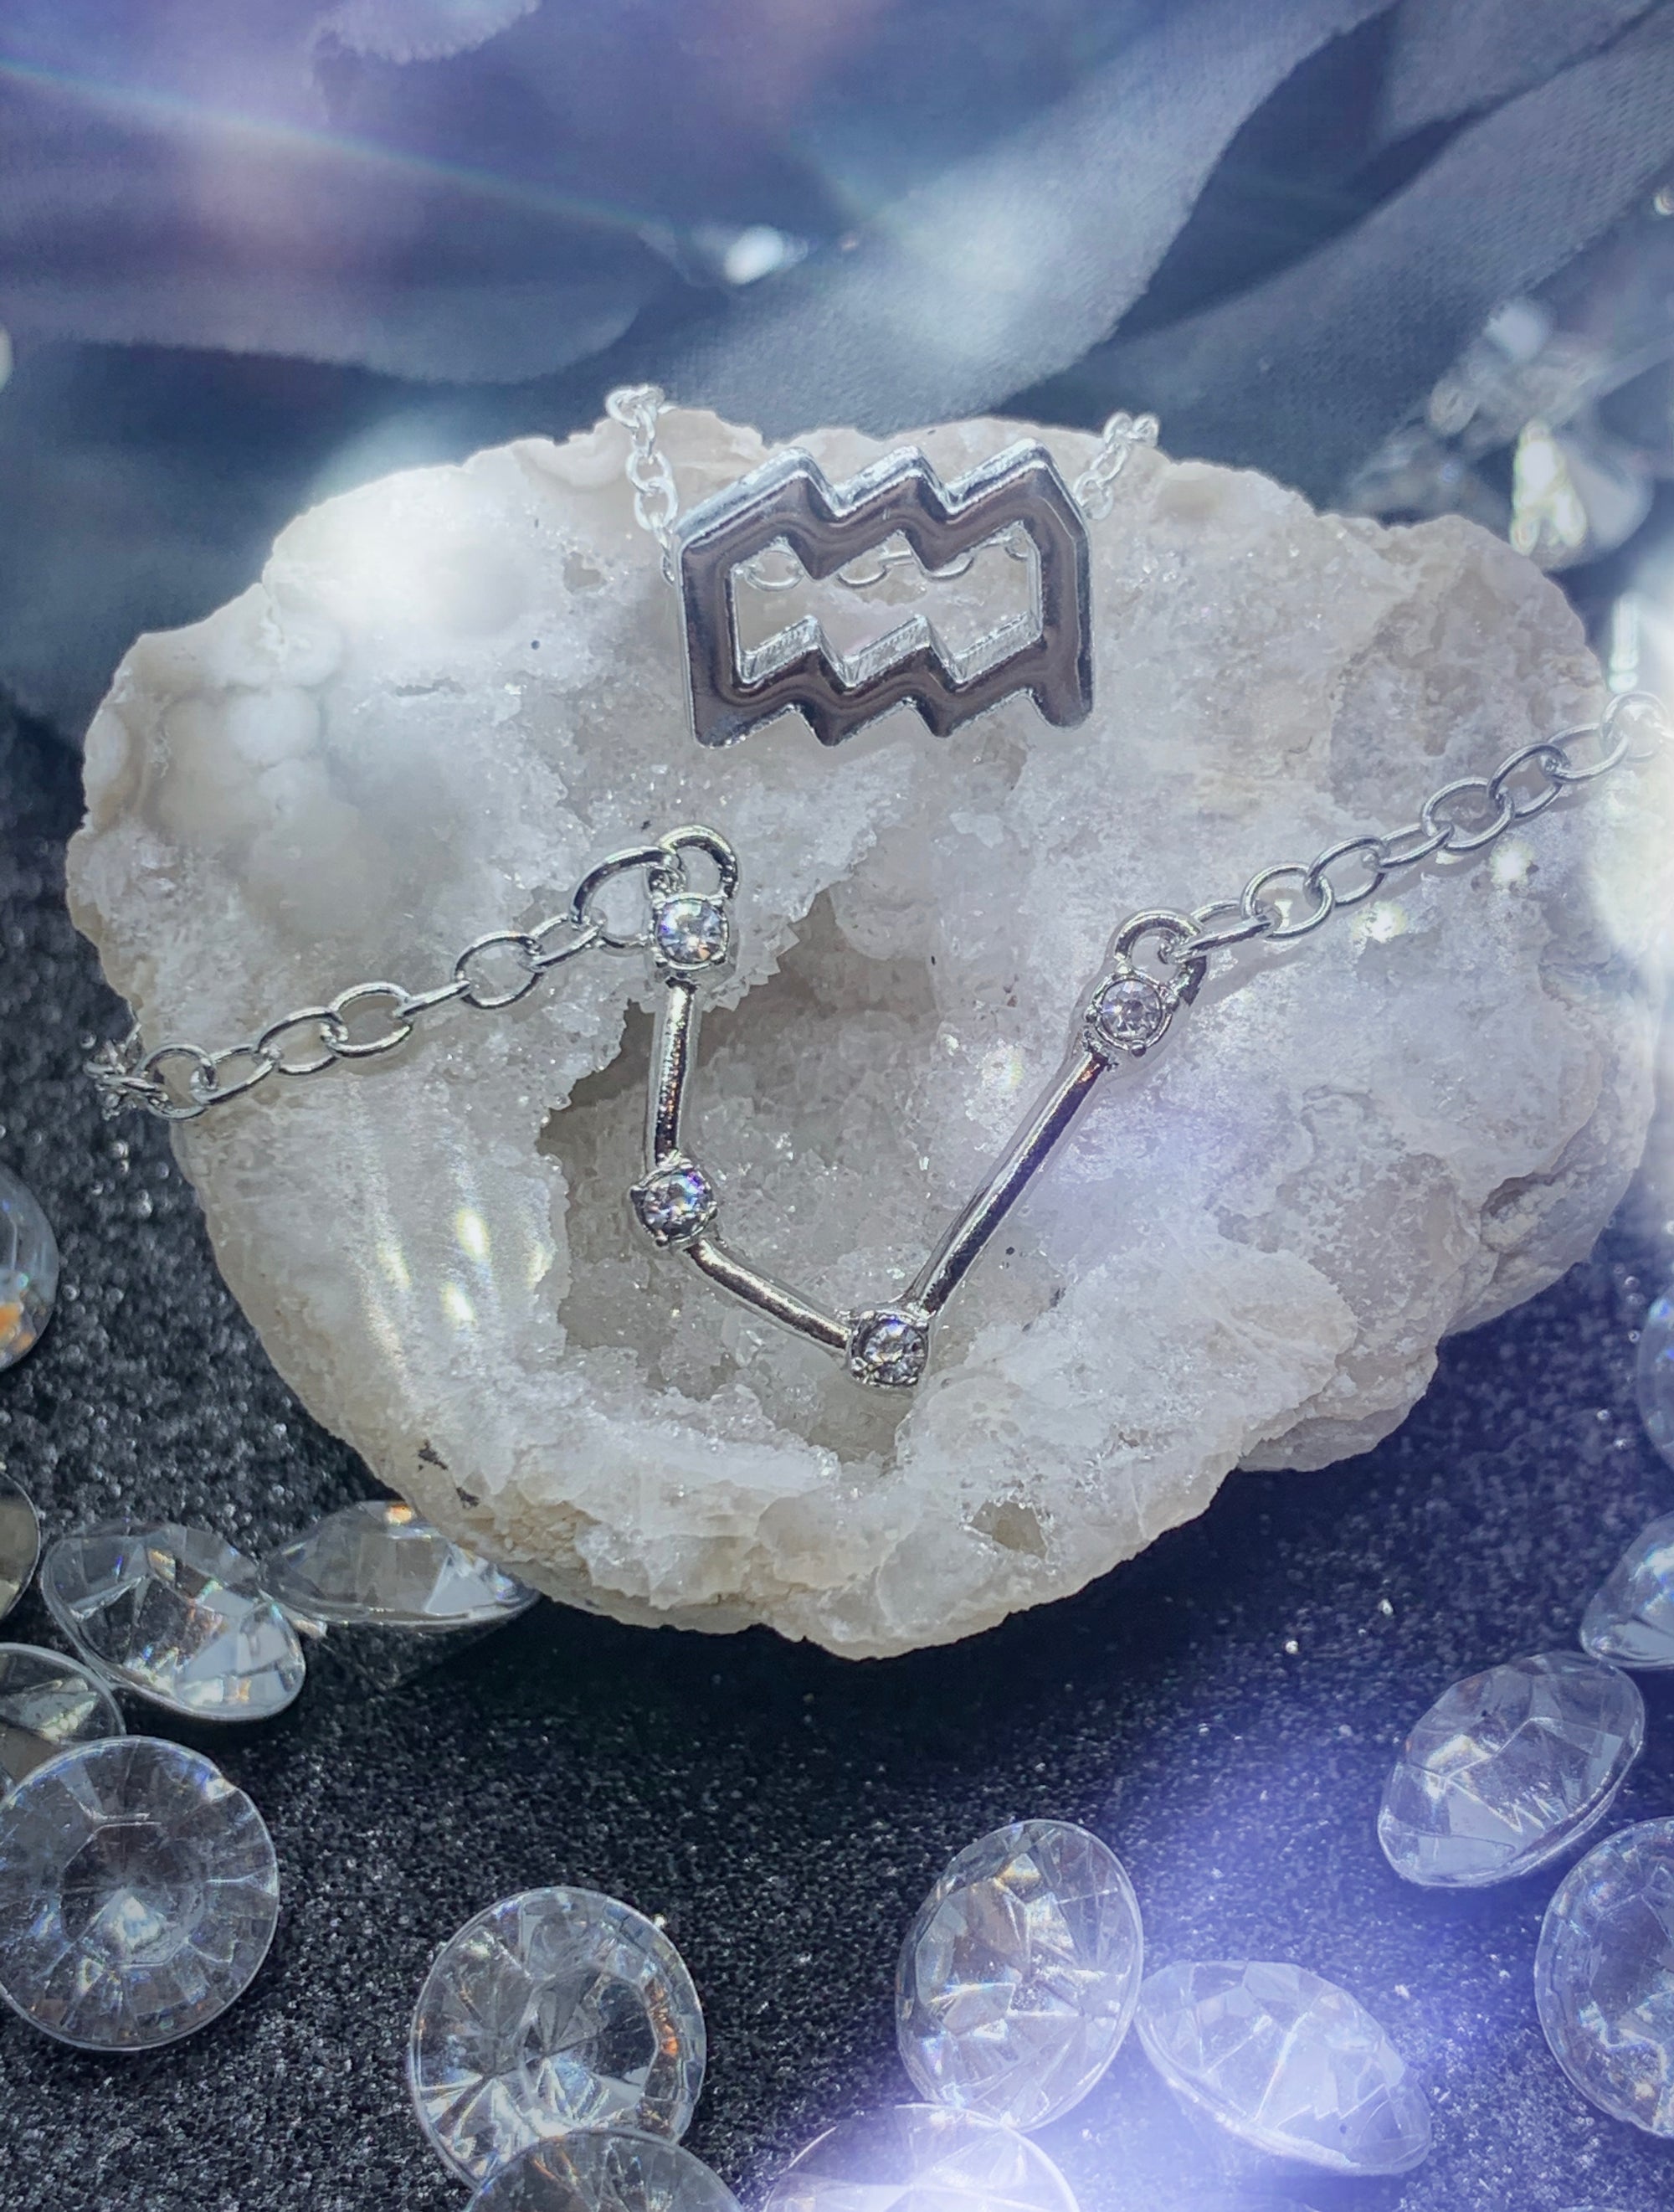 Aquarius Necklace & Bracelet Set